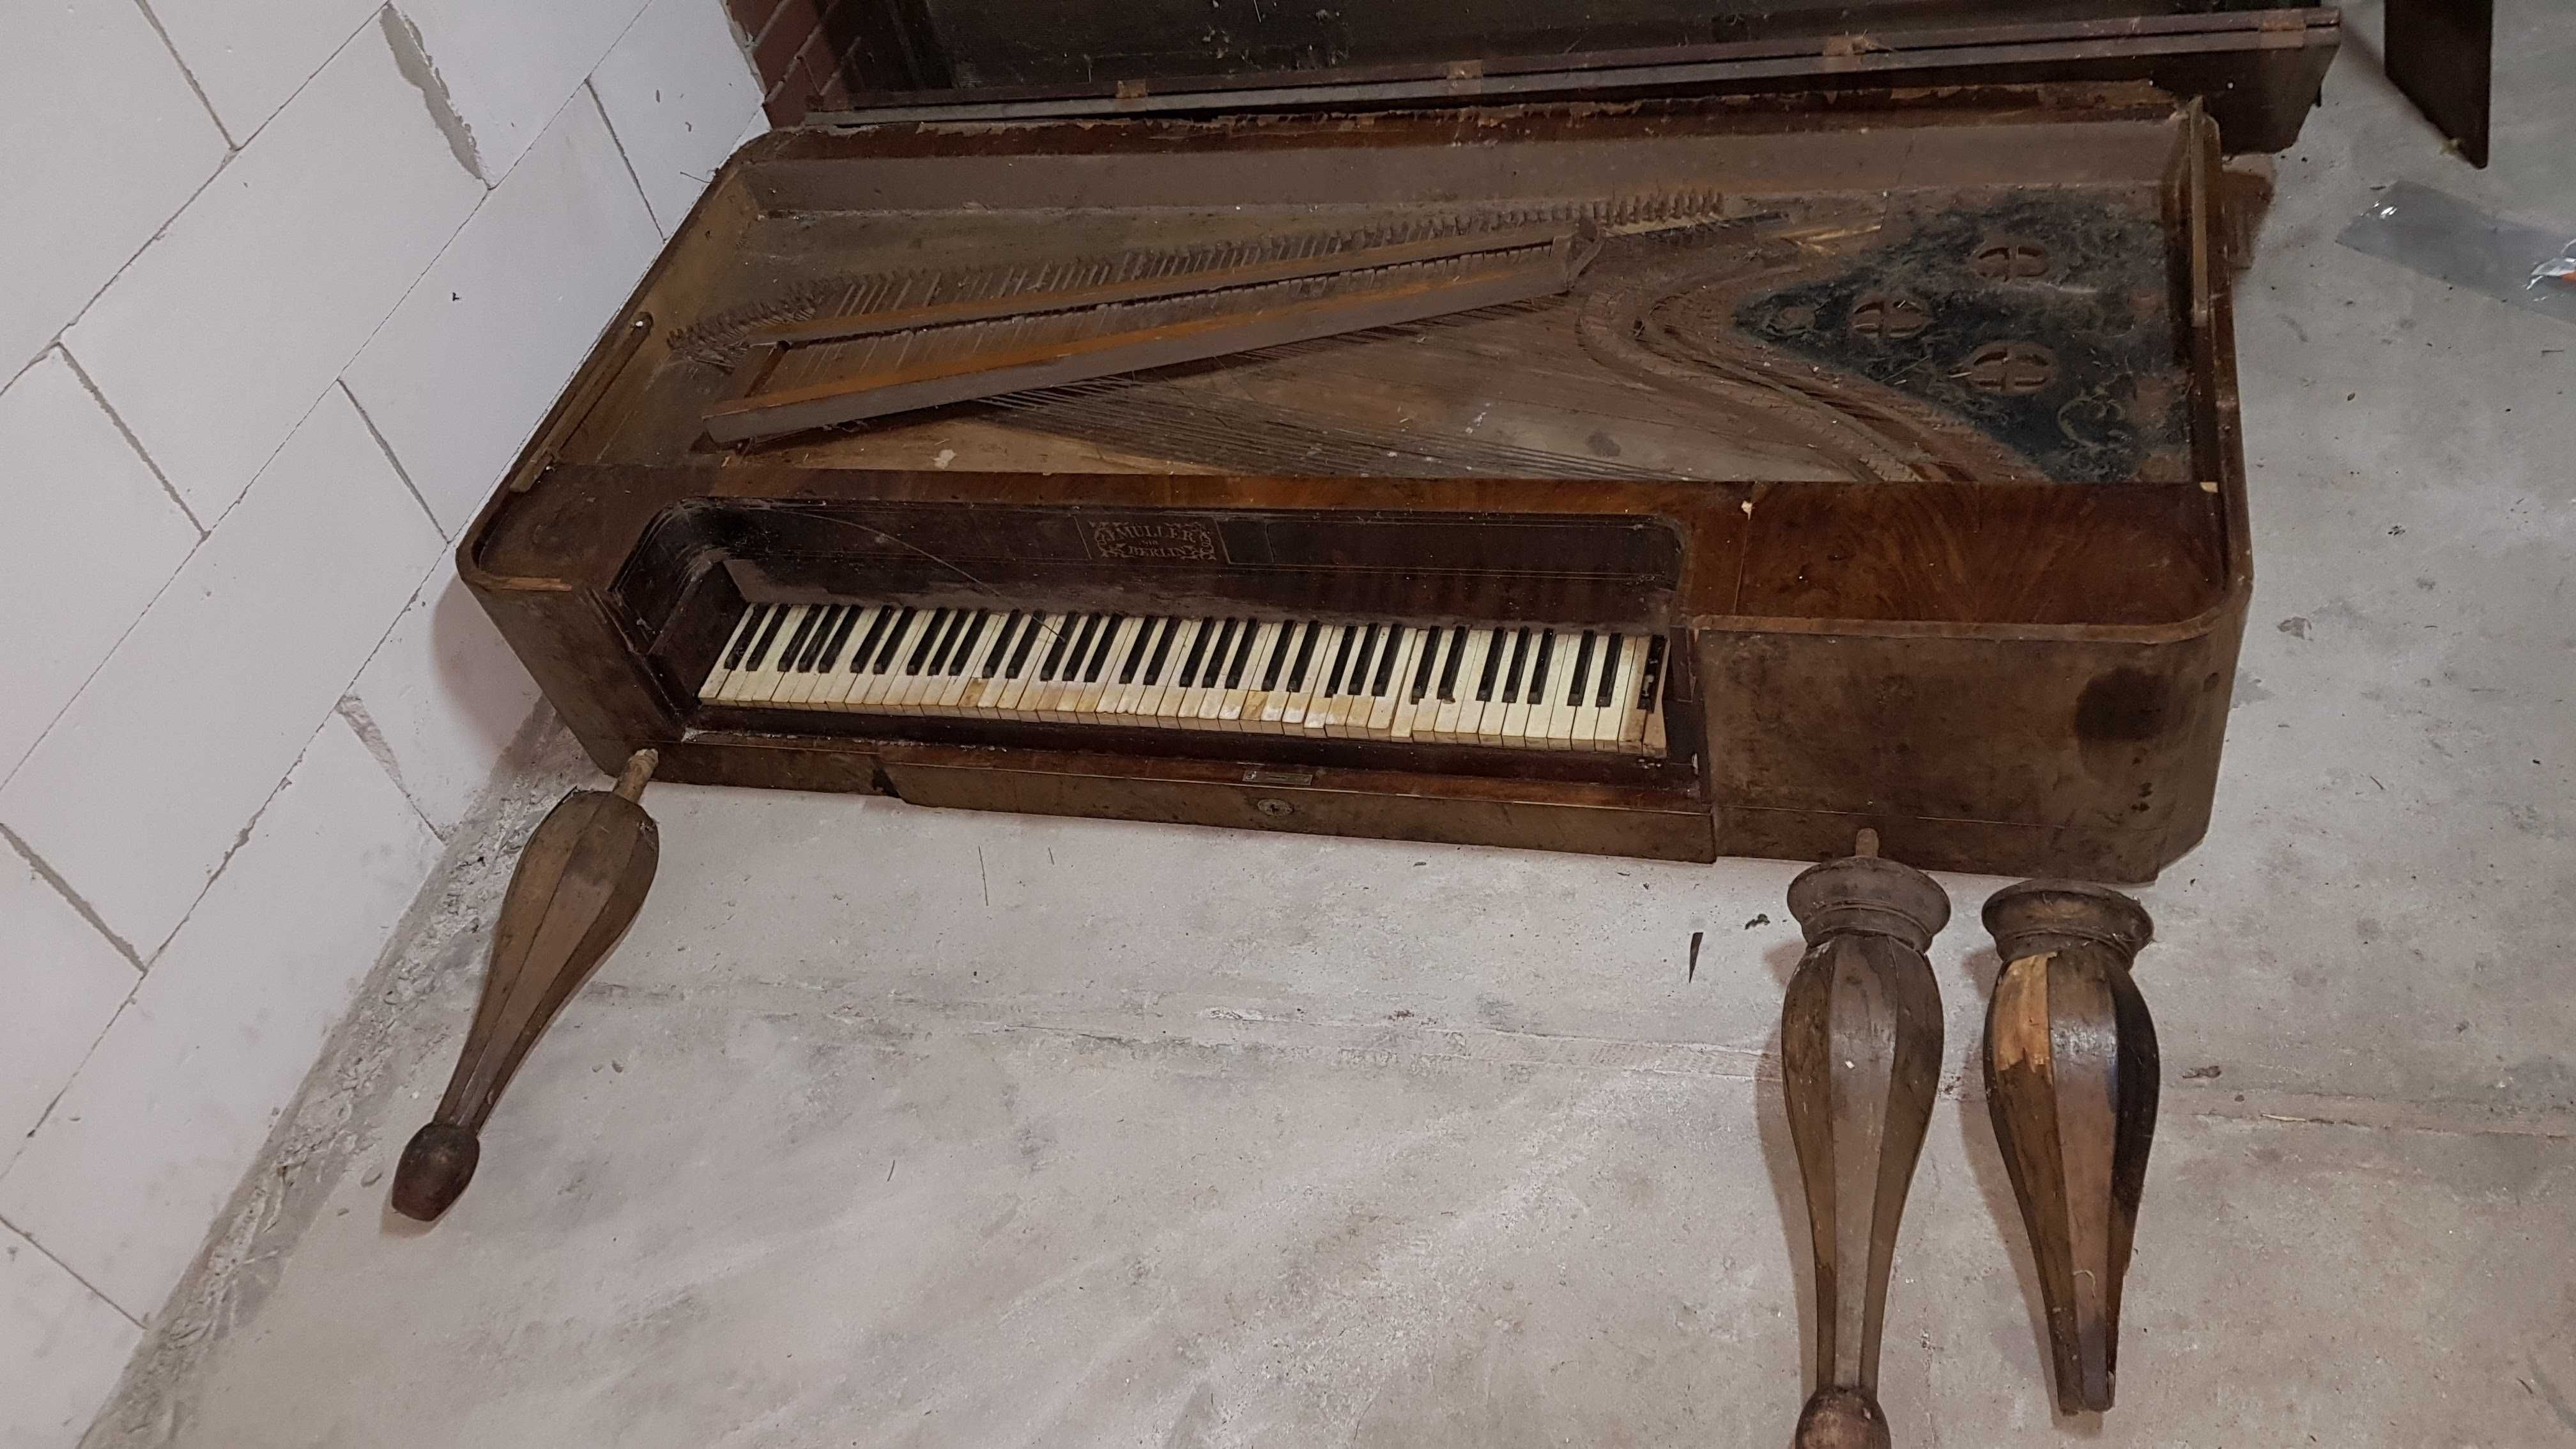 Fortepian stołowy do renowacji, klawisze oryginalne z tamtego okresu.